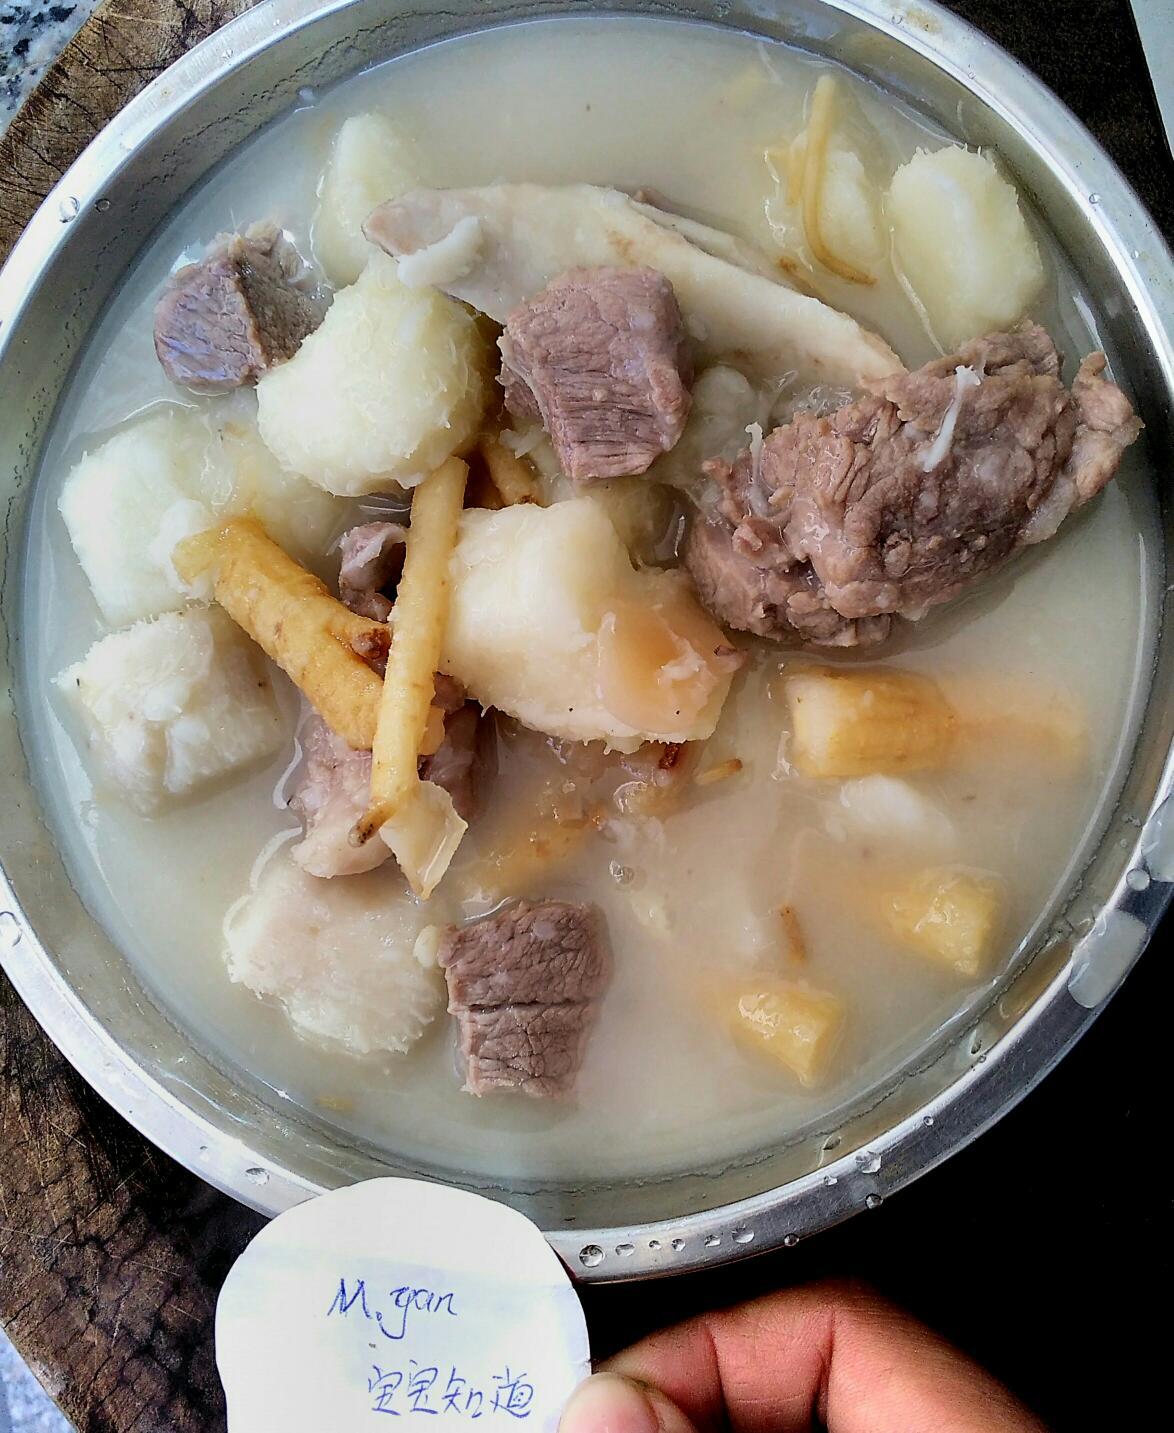 红枣北芪猪骨汤,红枣北芪猪骨汤的家常做法 - 美食杰红枣北芪猪骨汤做法大全